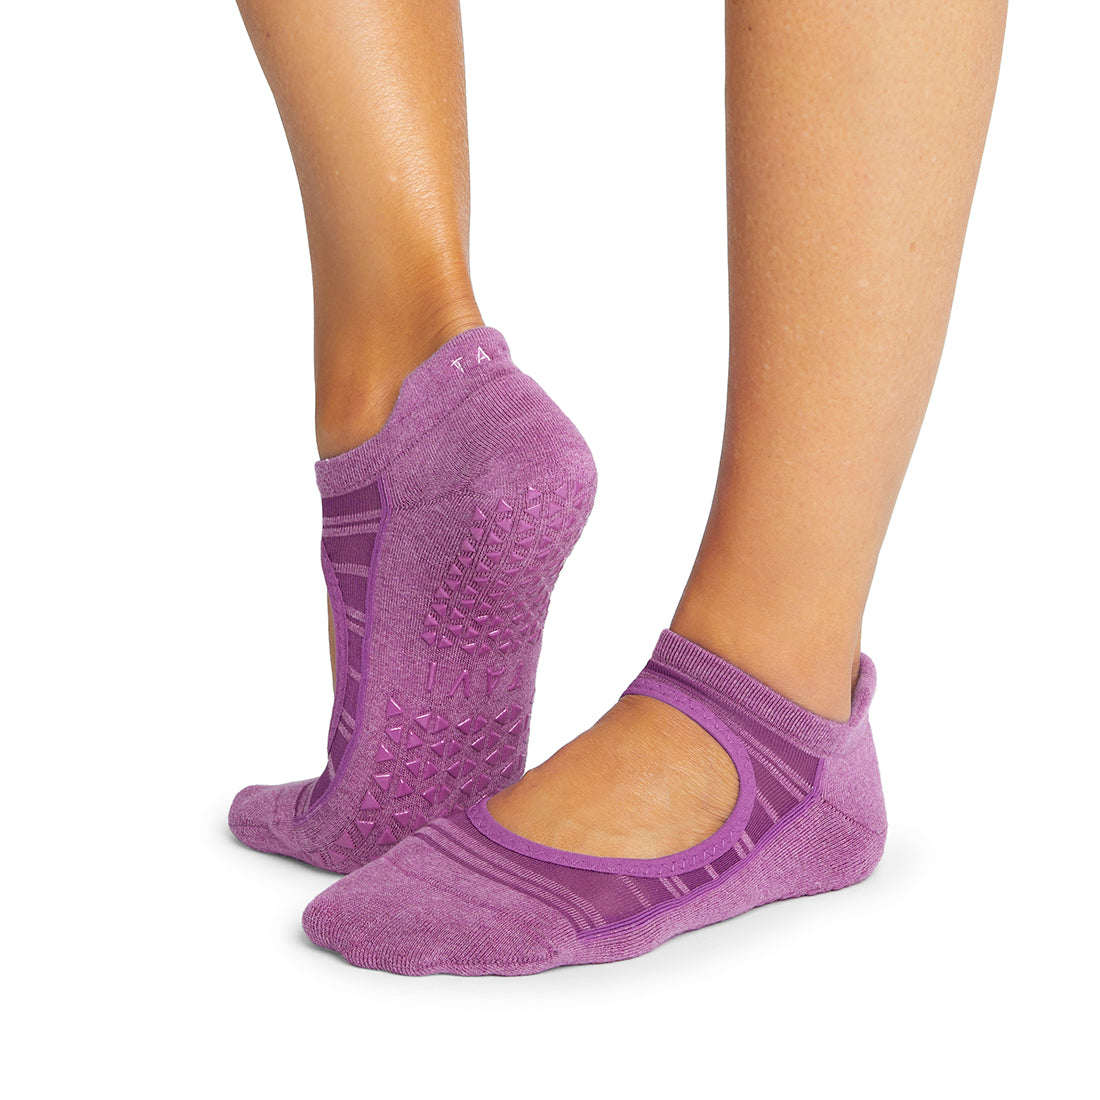 Fashion Liner Half Socks for Women Seamless Nylon Ghana